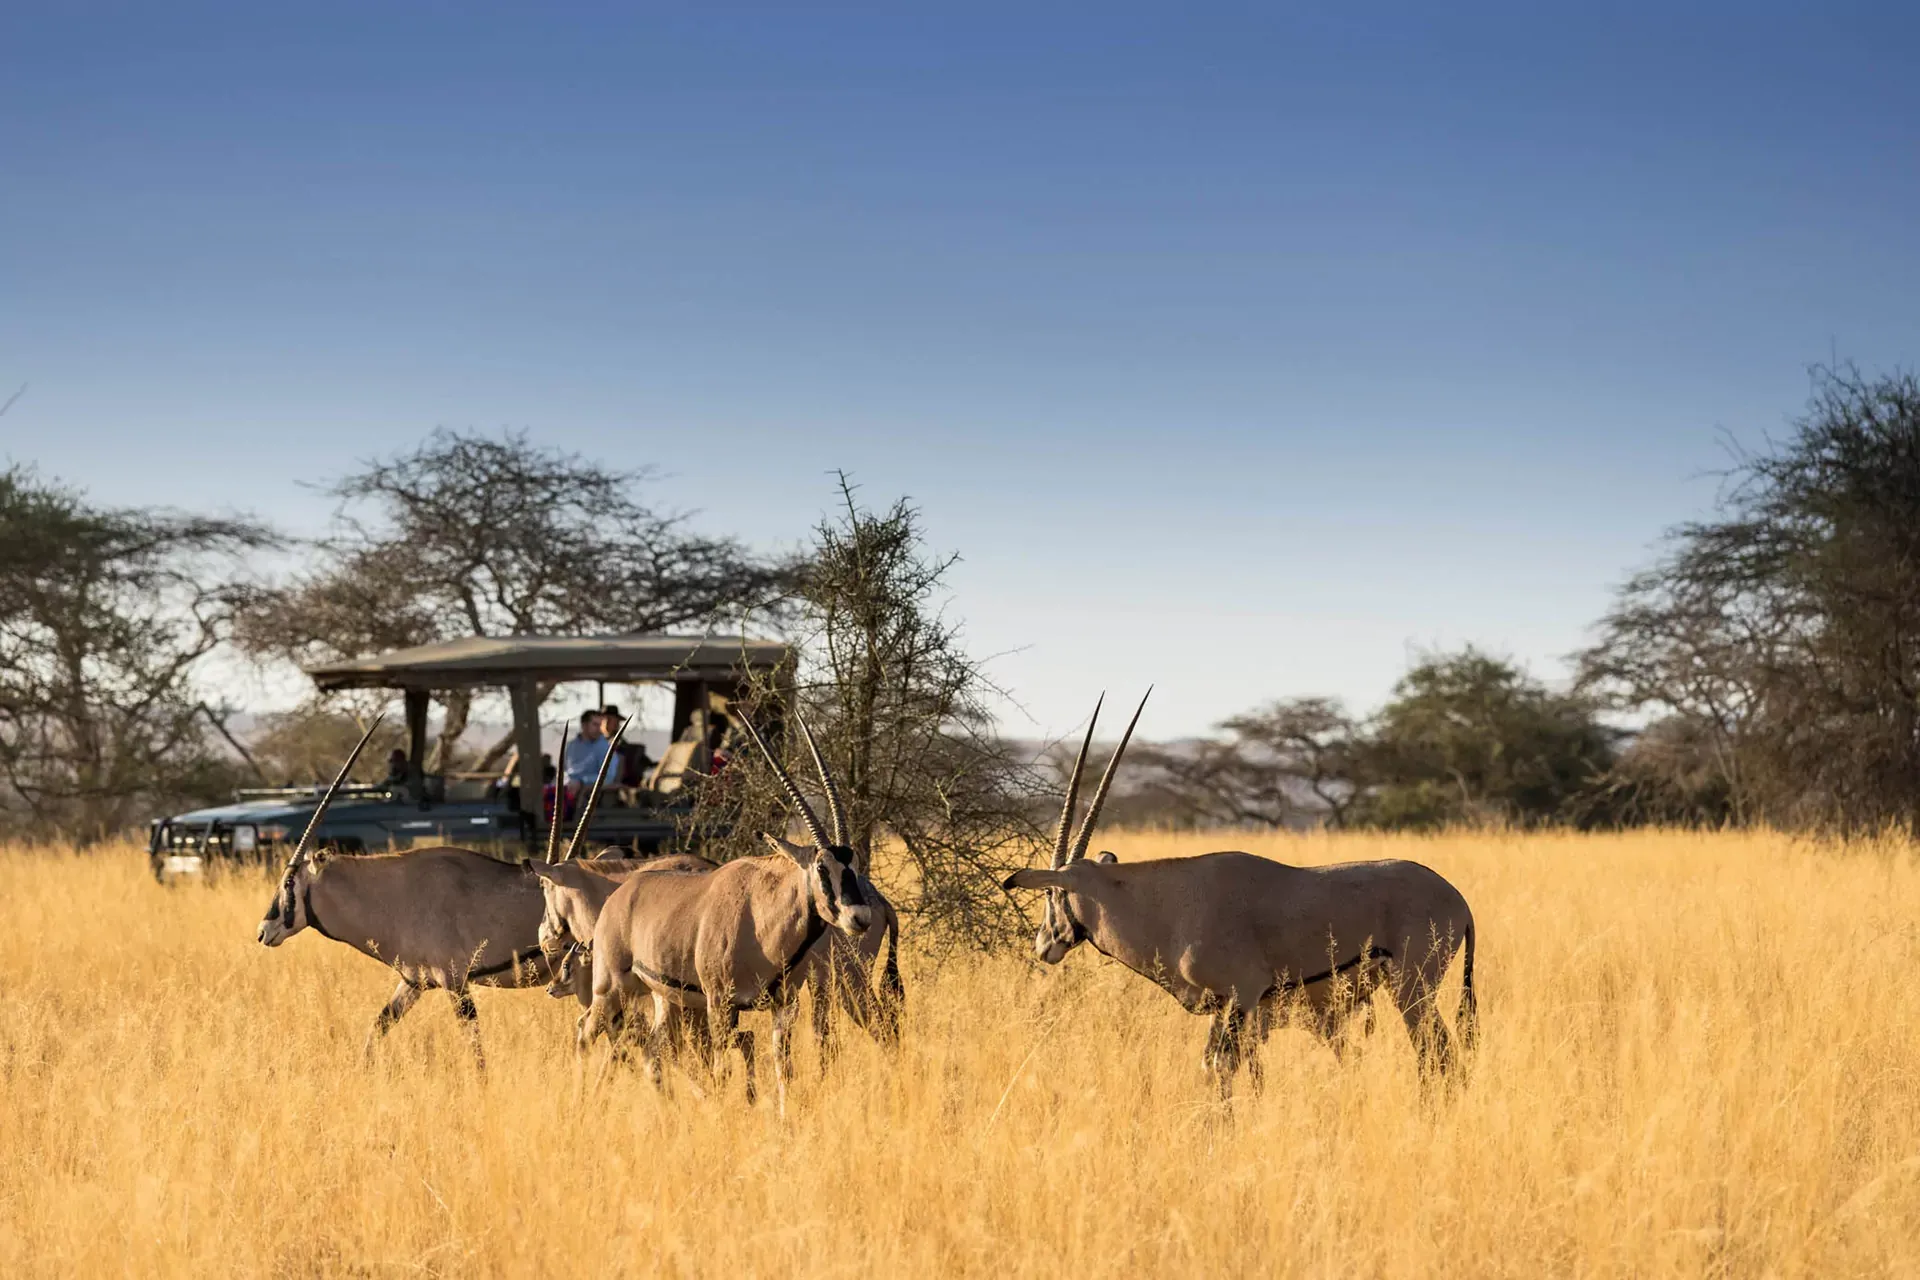 Kenya safari packages prices for Masai Mara Tour - a game drive in Masai Mara